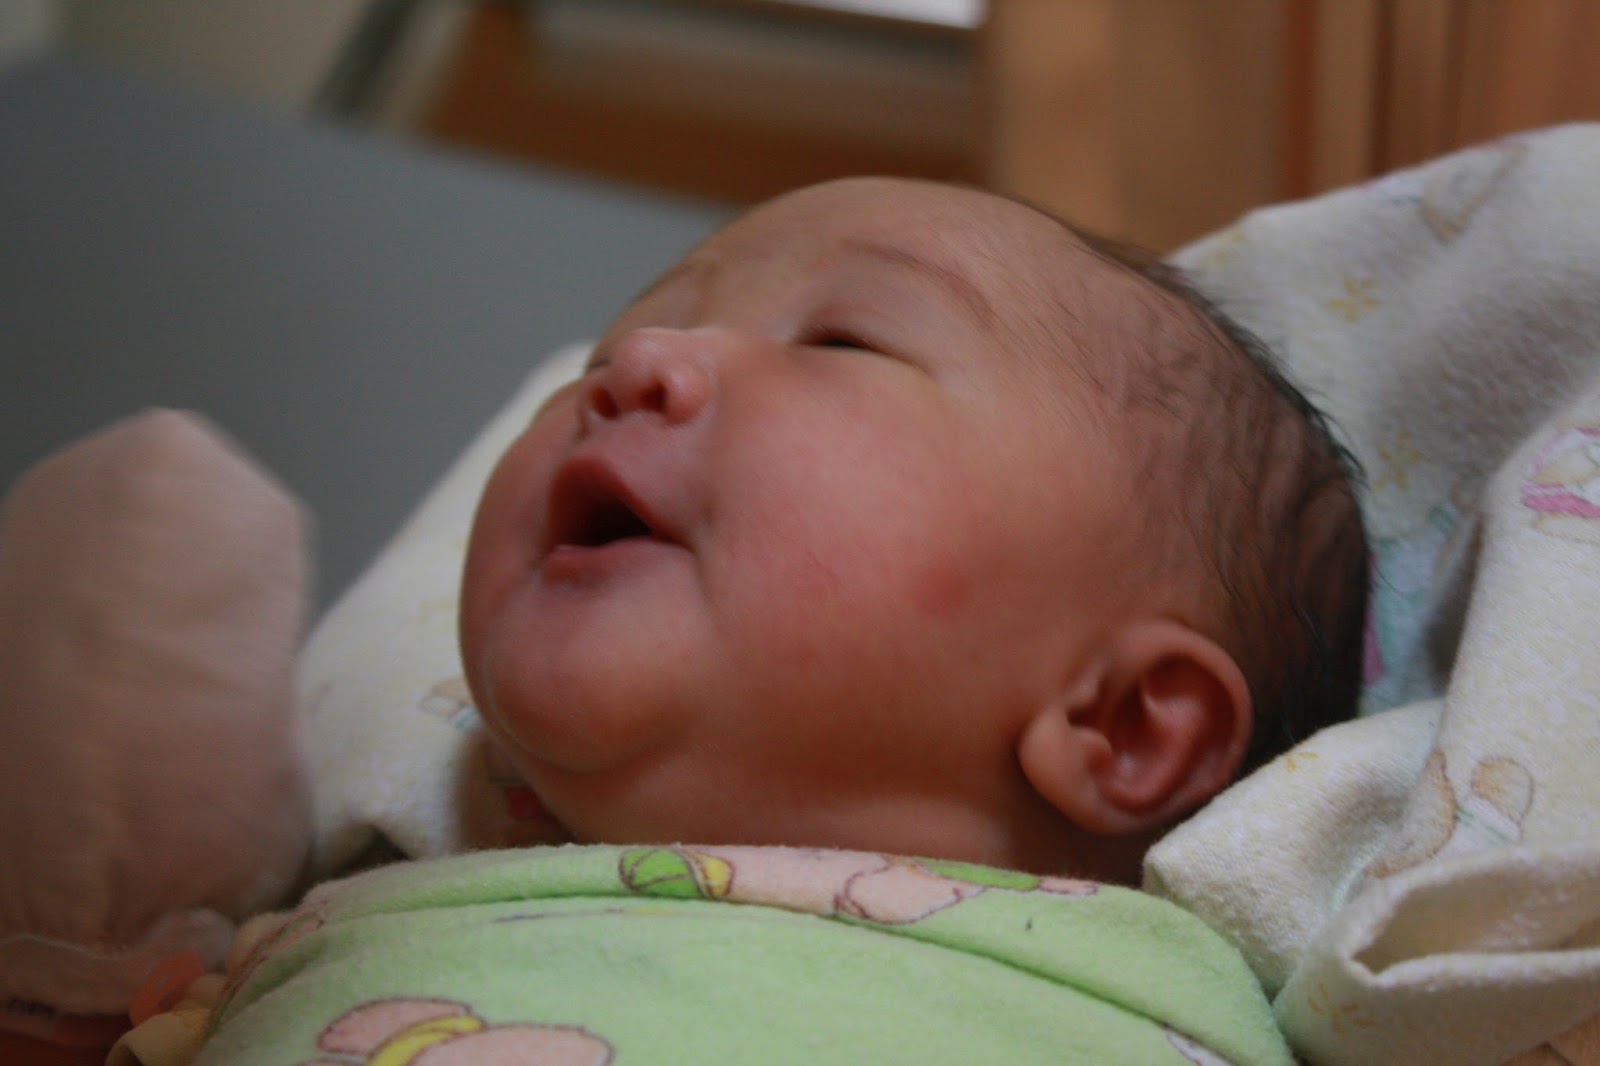 Koleksi Foto Lucu dan Imut Bayi Baru Lahir - Perlengkapan Bayi Baru Lahir